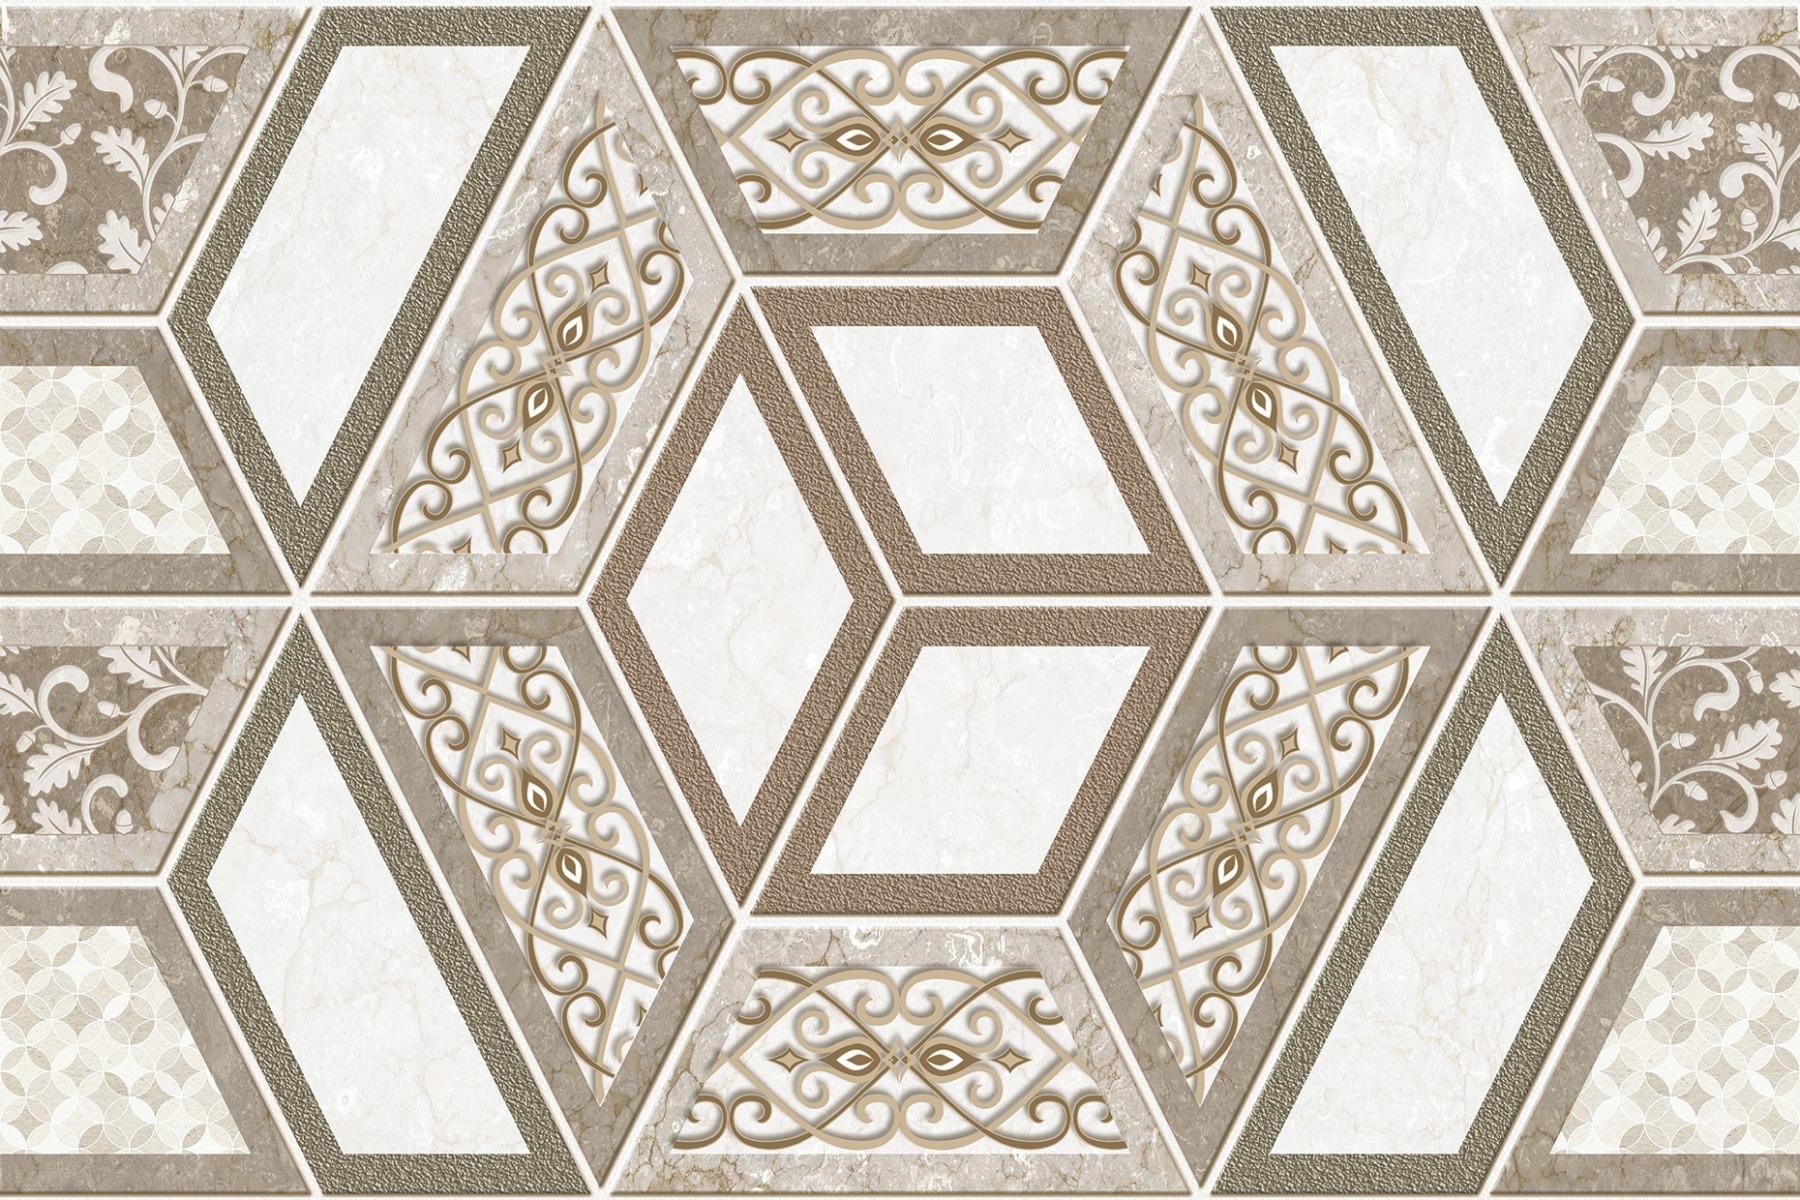 Sandune Tiles for Bathroom Tiles, Kitchen Tiles, Balcony Tiles